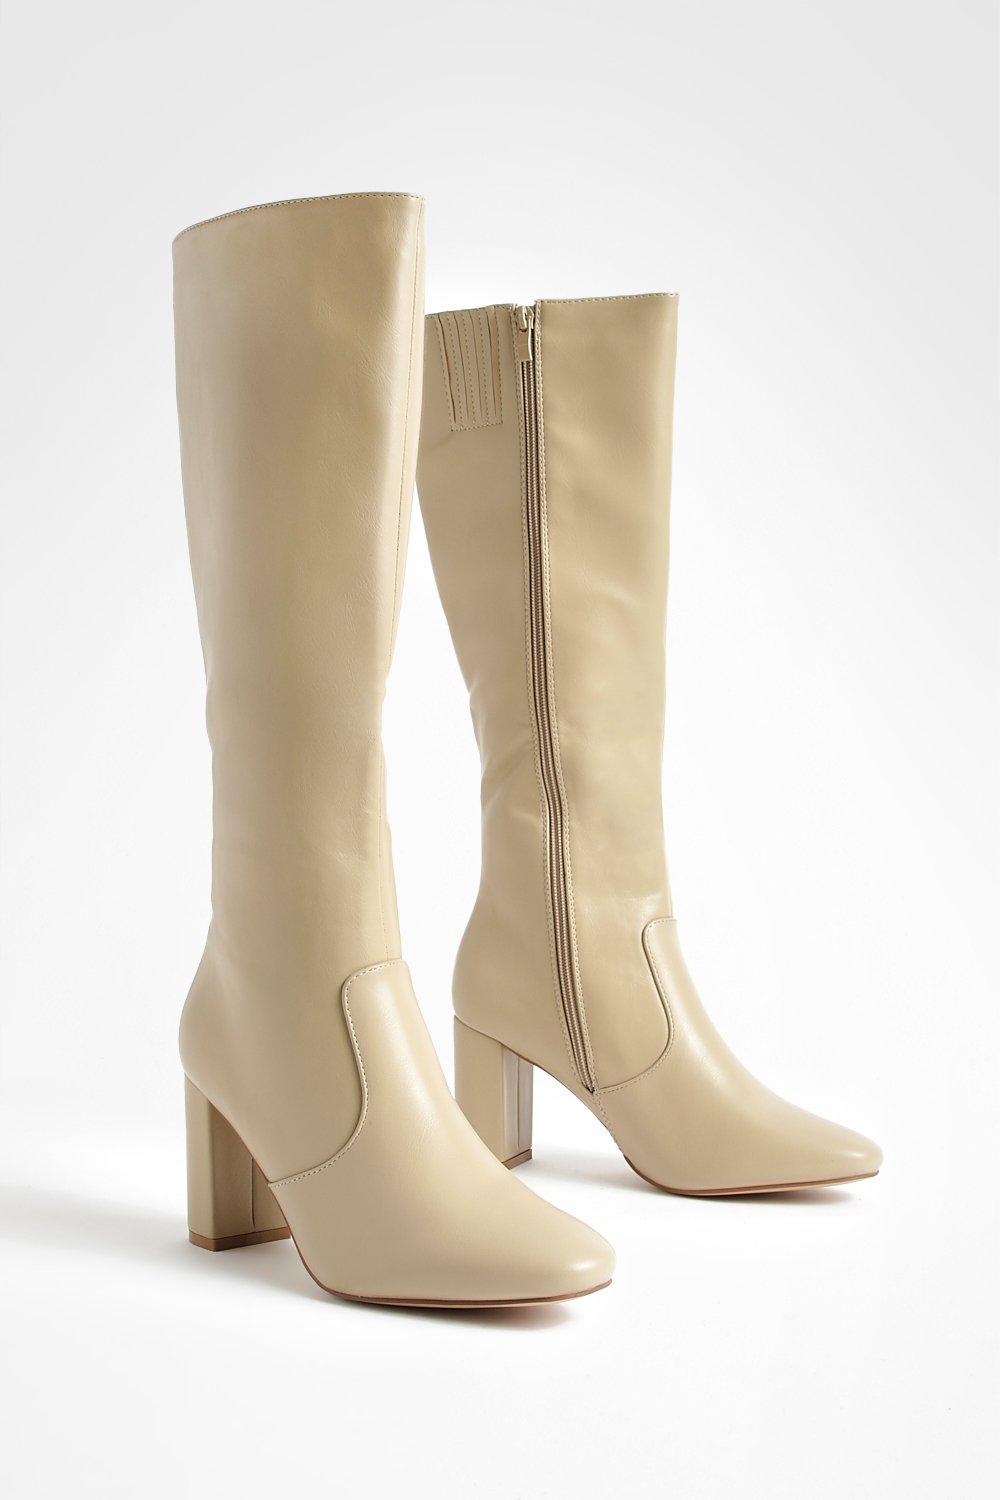 Womens Straight Block Heel Knee High Boots - White - 3, White